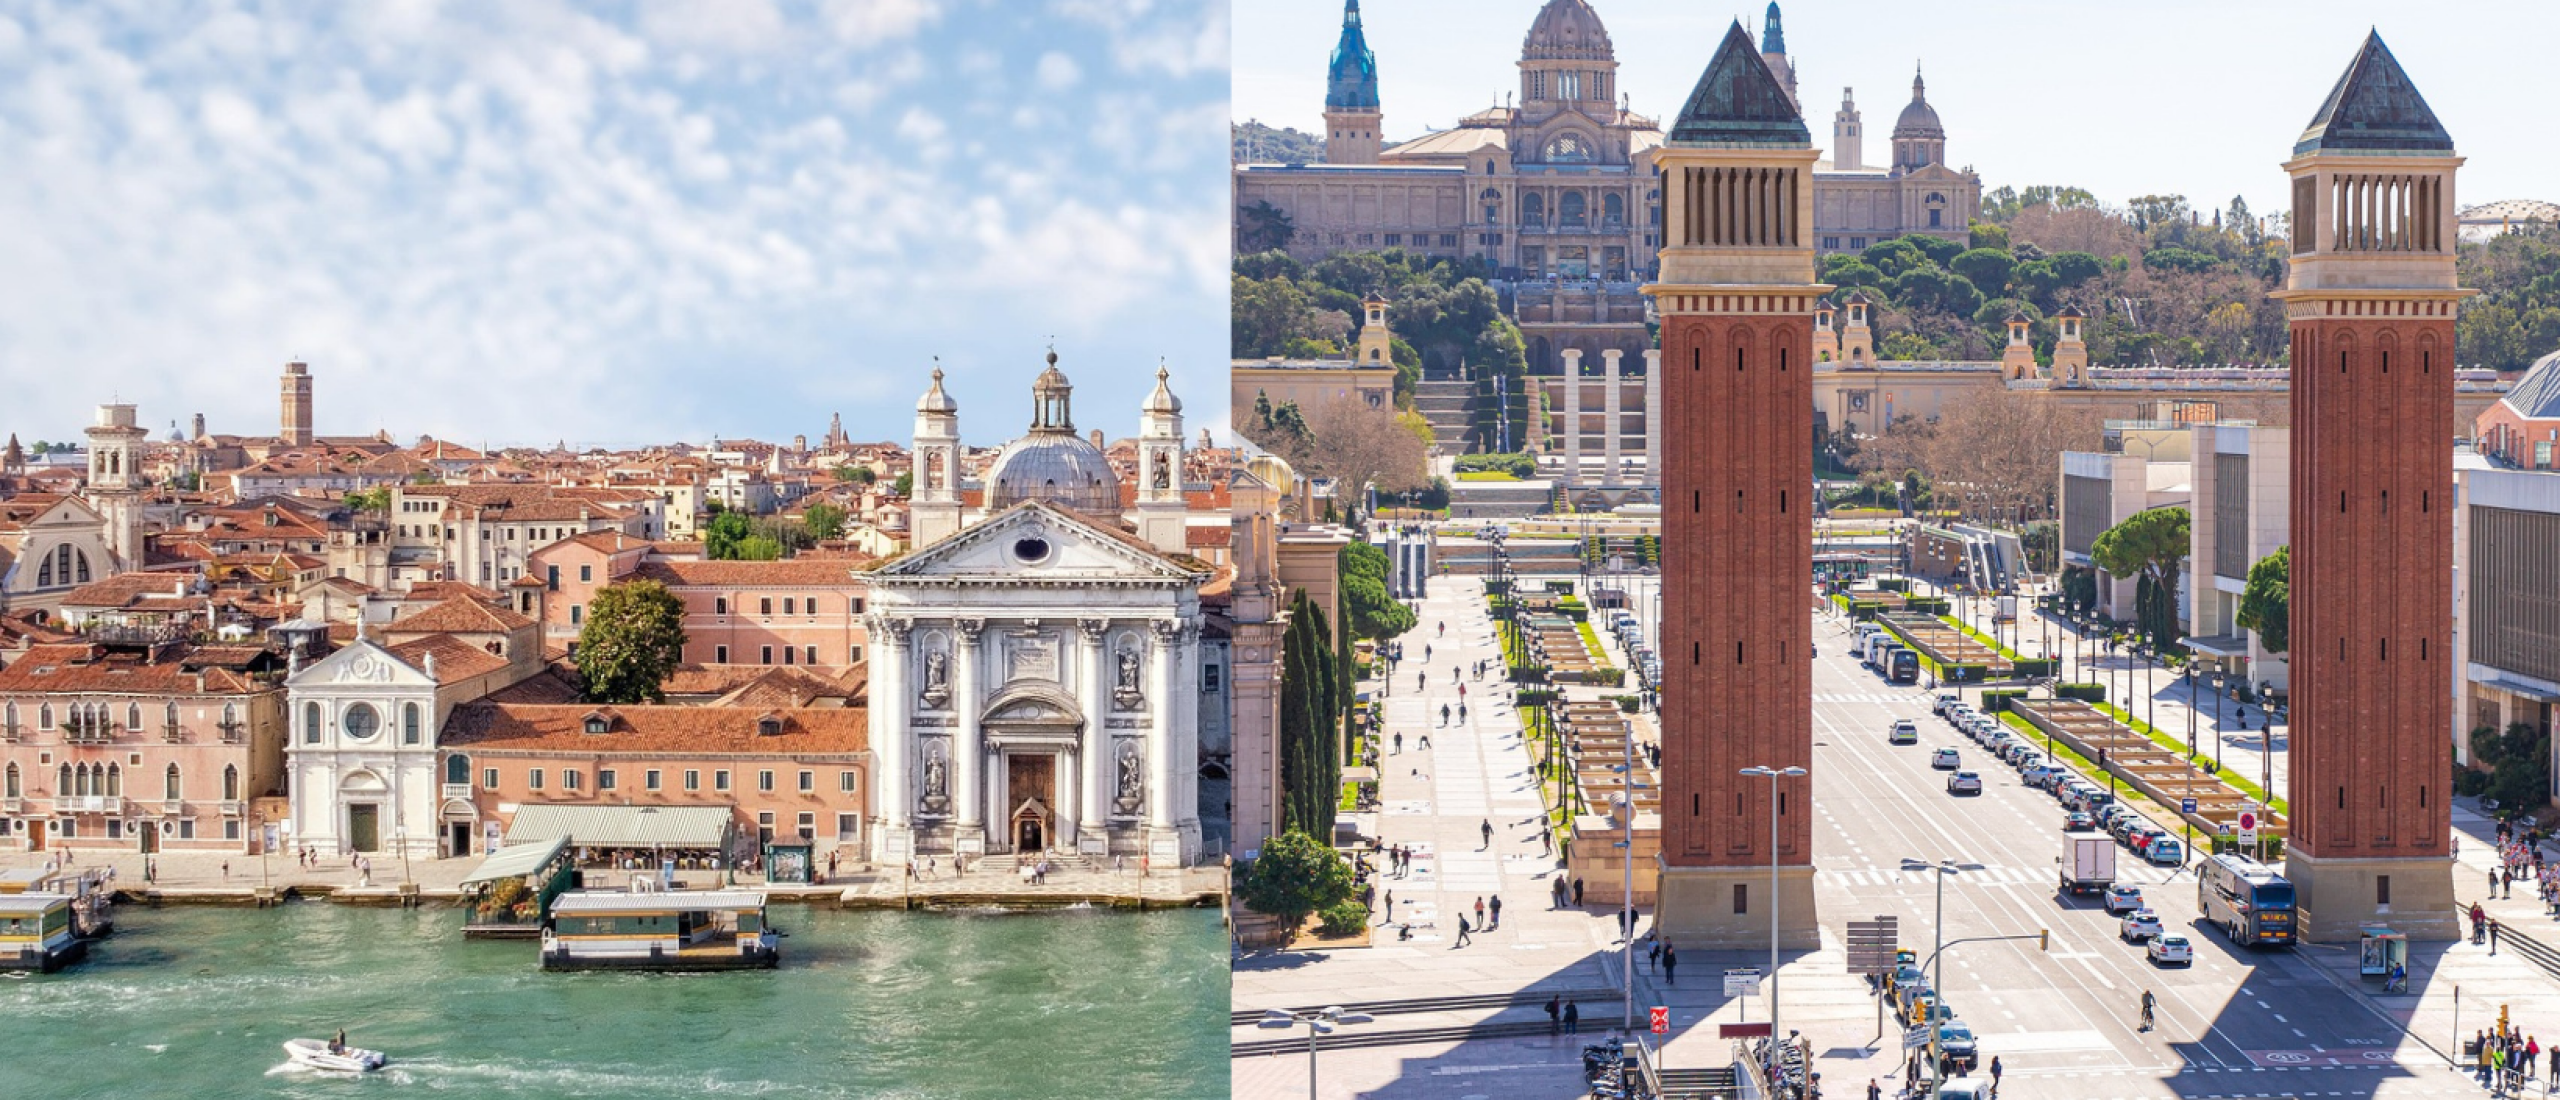 Vakantie Italië of Spanje? Wat zijn de grootste verschillen?